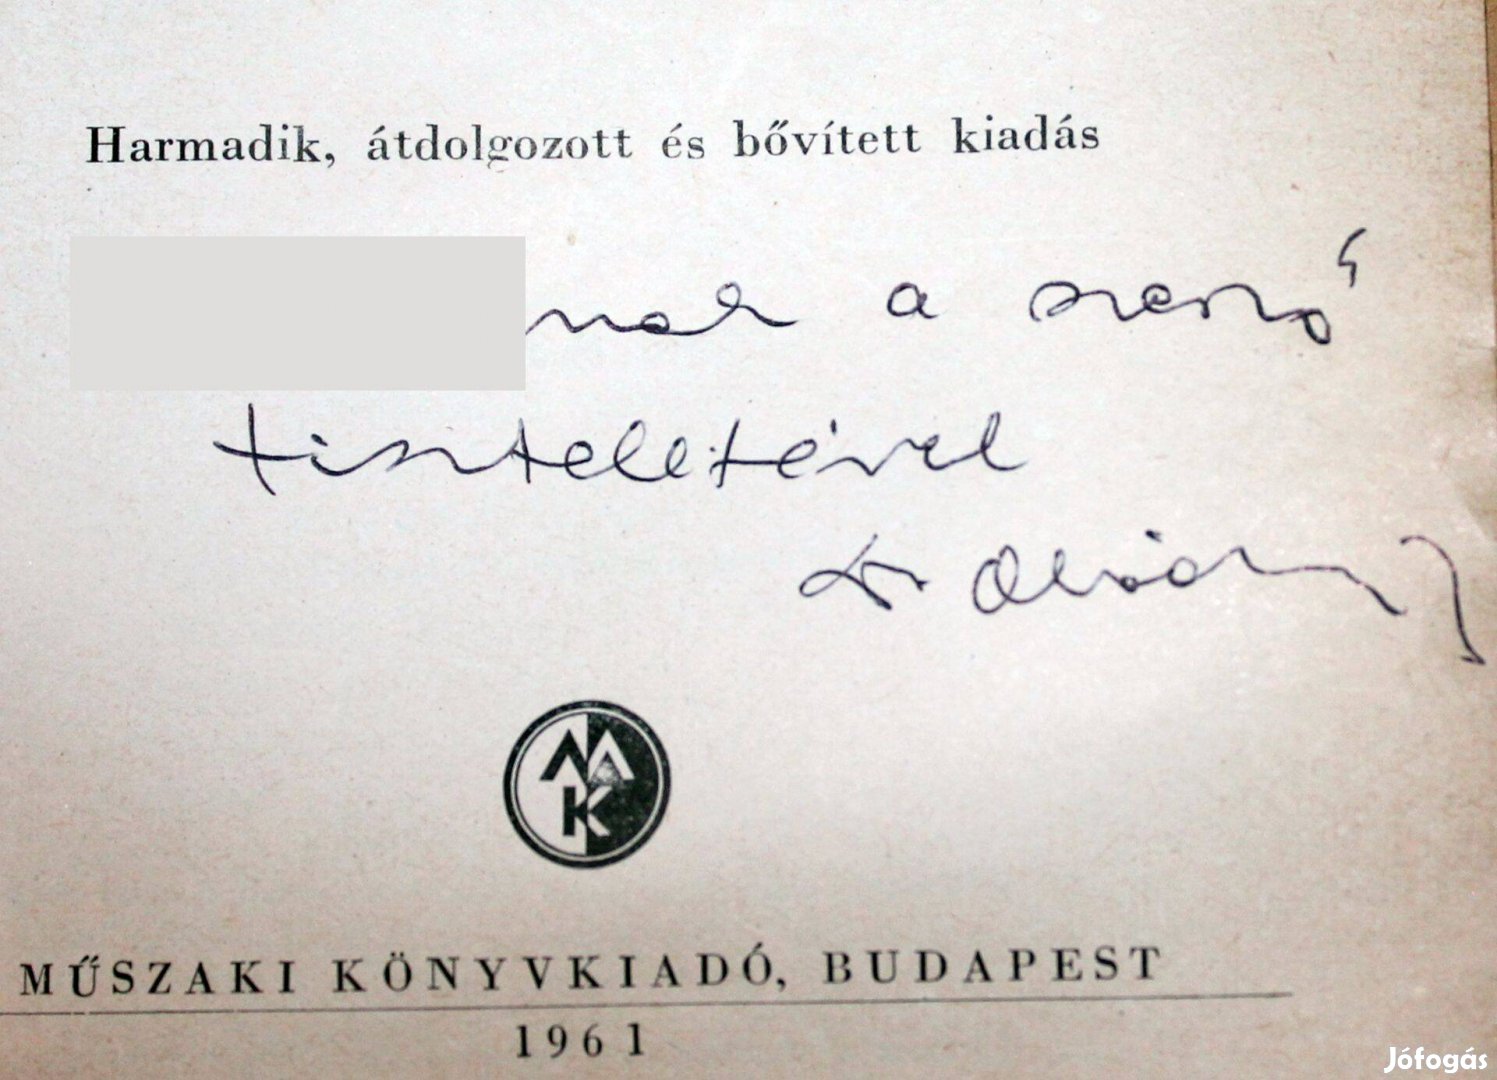 Obádovics J. Gyula Matematika 1961 könyv könyvlegenda dedikált